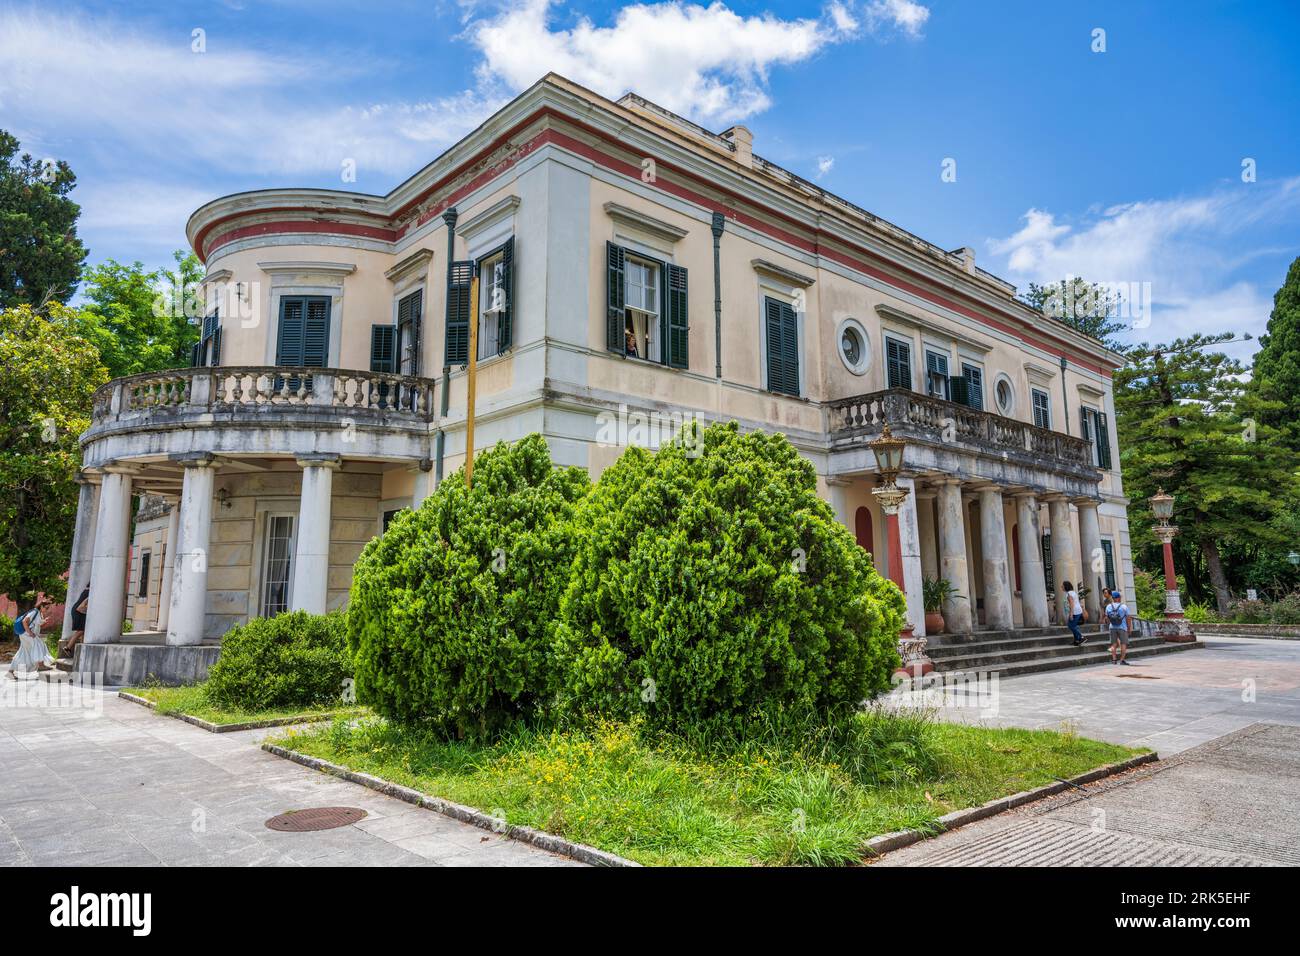 Villa mon repos, résidence d’été originale du Haut-Commissaire britannique, aujourd’hui Musée de Palaiopolis – Île de Corfou, Îles Ioniennes, Grèce Banque D'Images